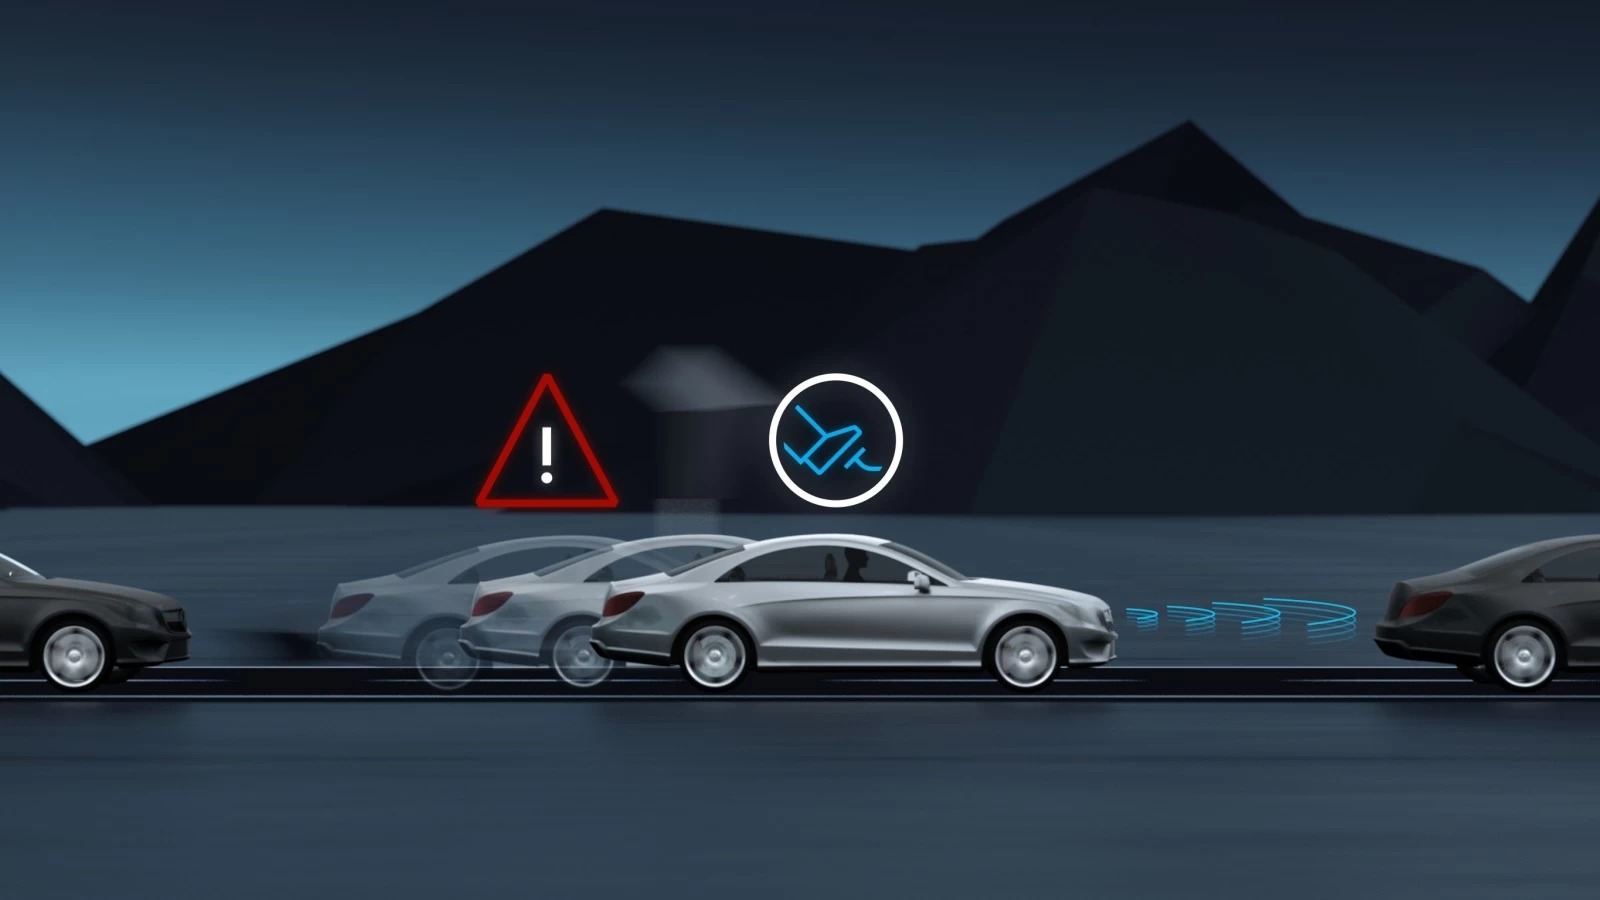 Hệ thống hỗ trợ phanh khẩn cấp của Mercedes-Benz: Nên dùng hay không?